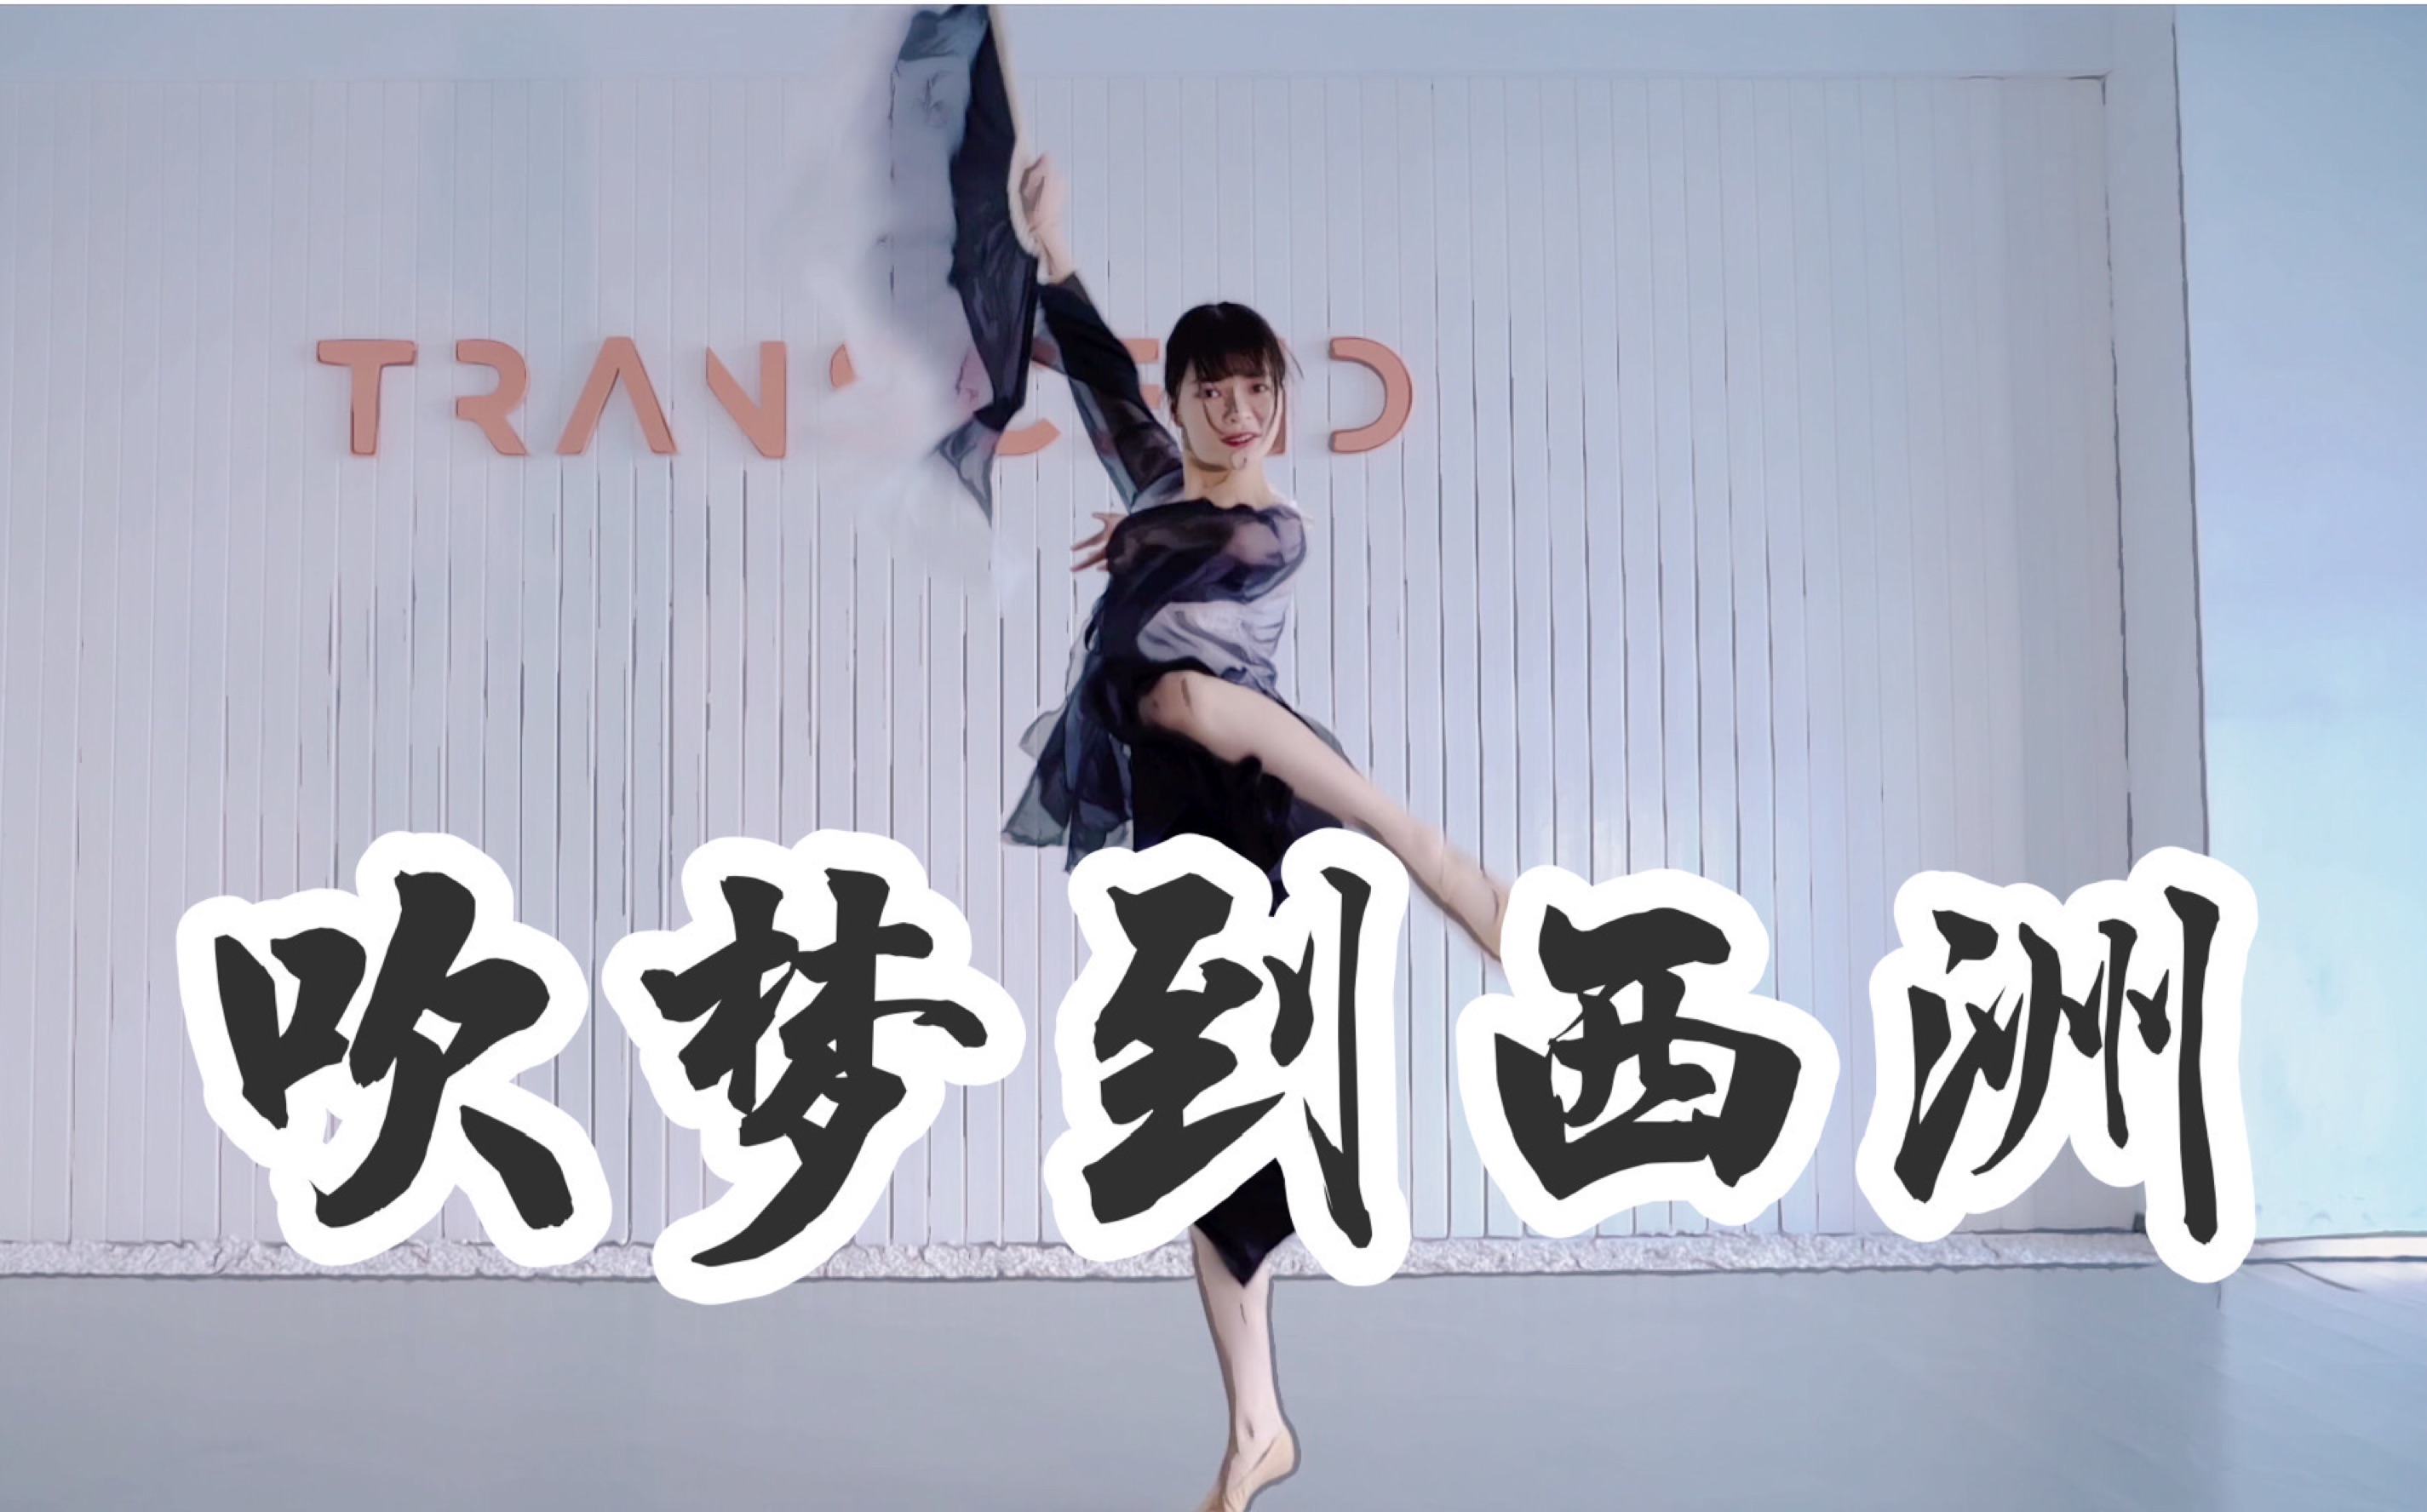 【全盛舞蹈工作室】柔美中国风扇子舞《吹梦到西洲》编舞练习室